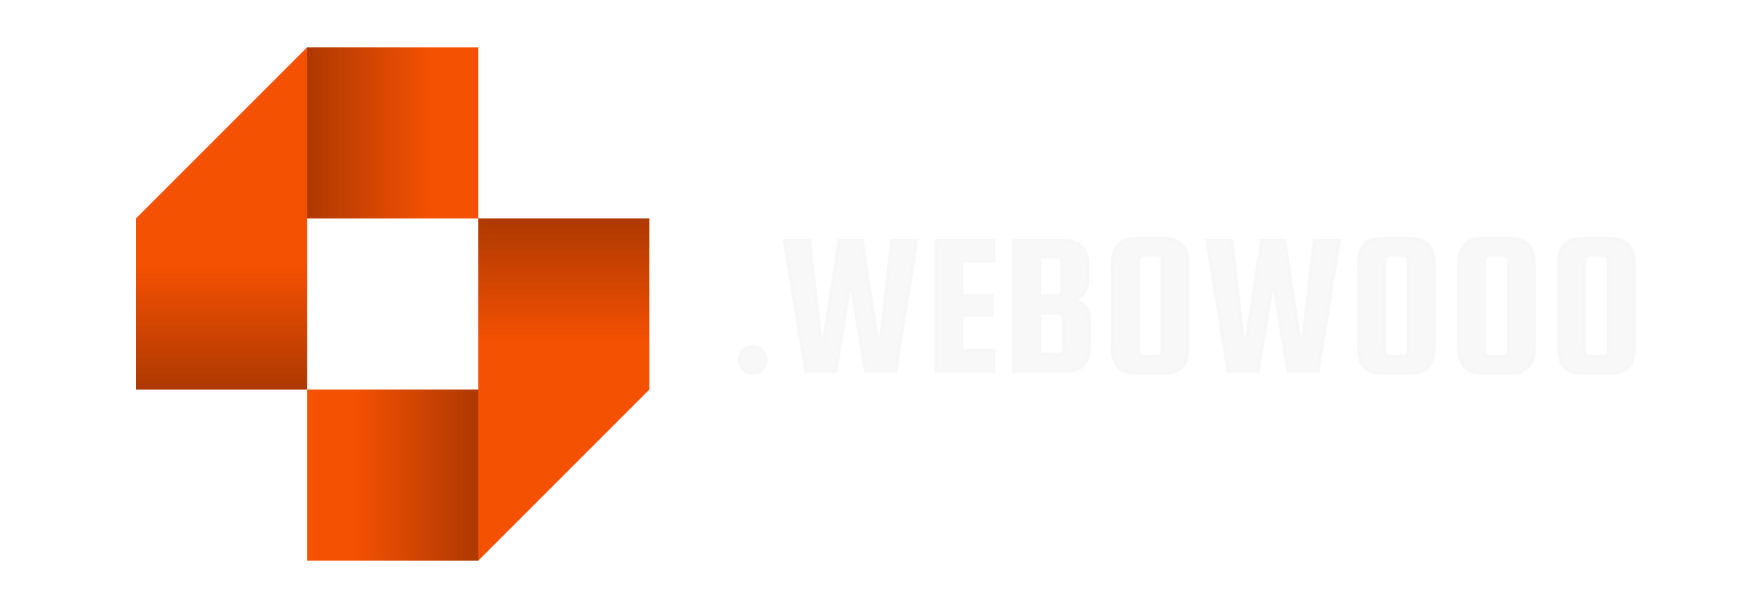 Webowooo